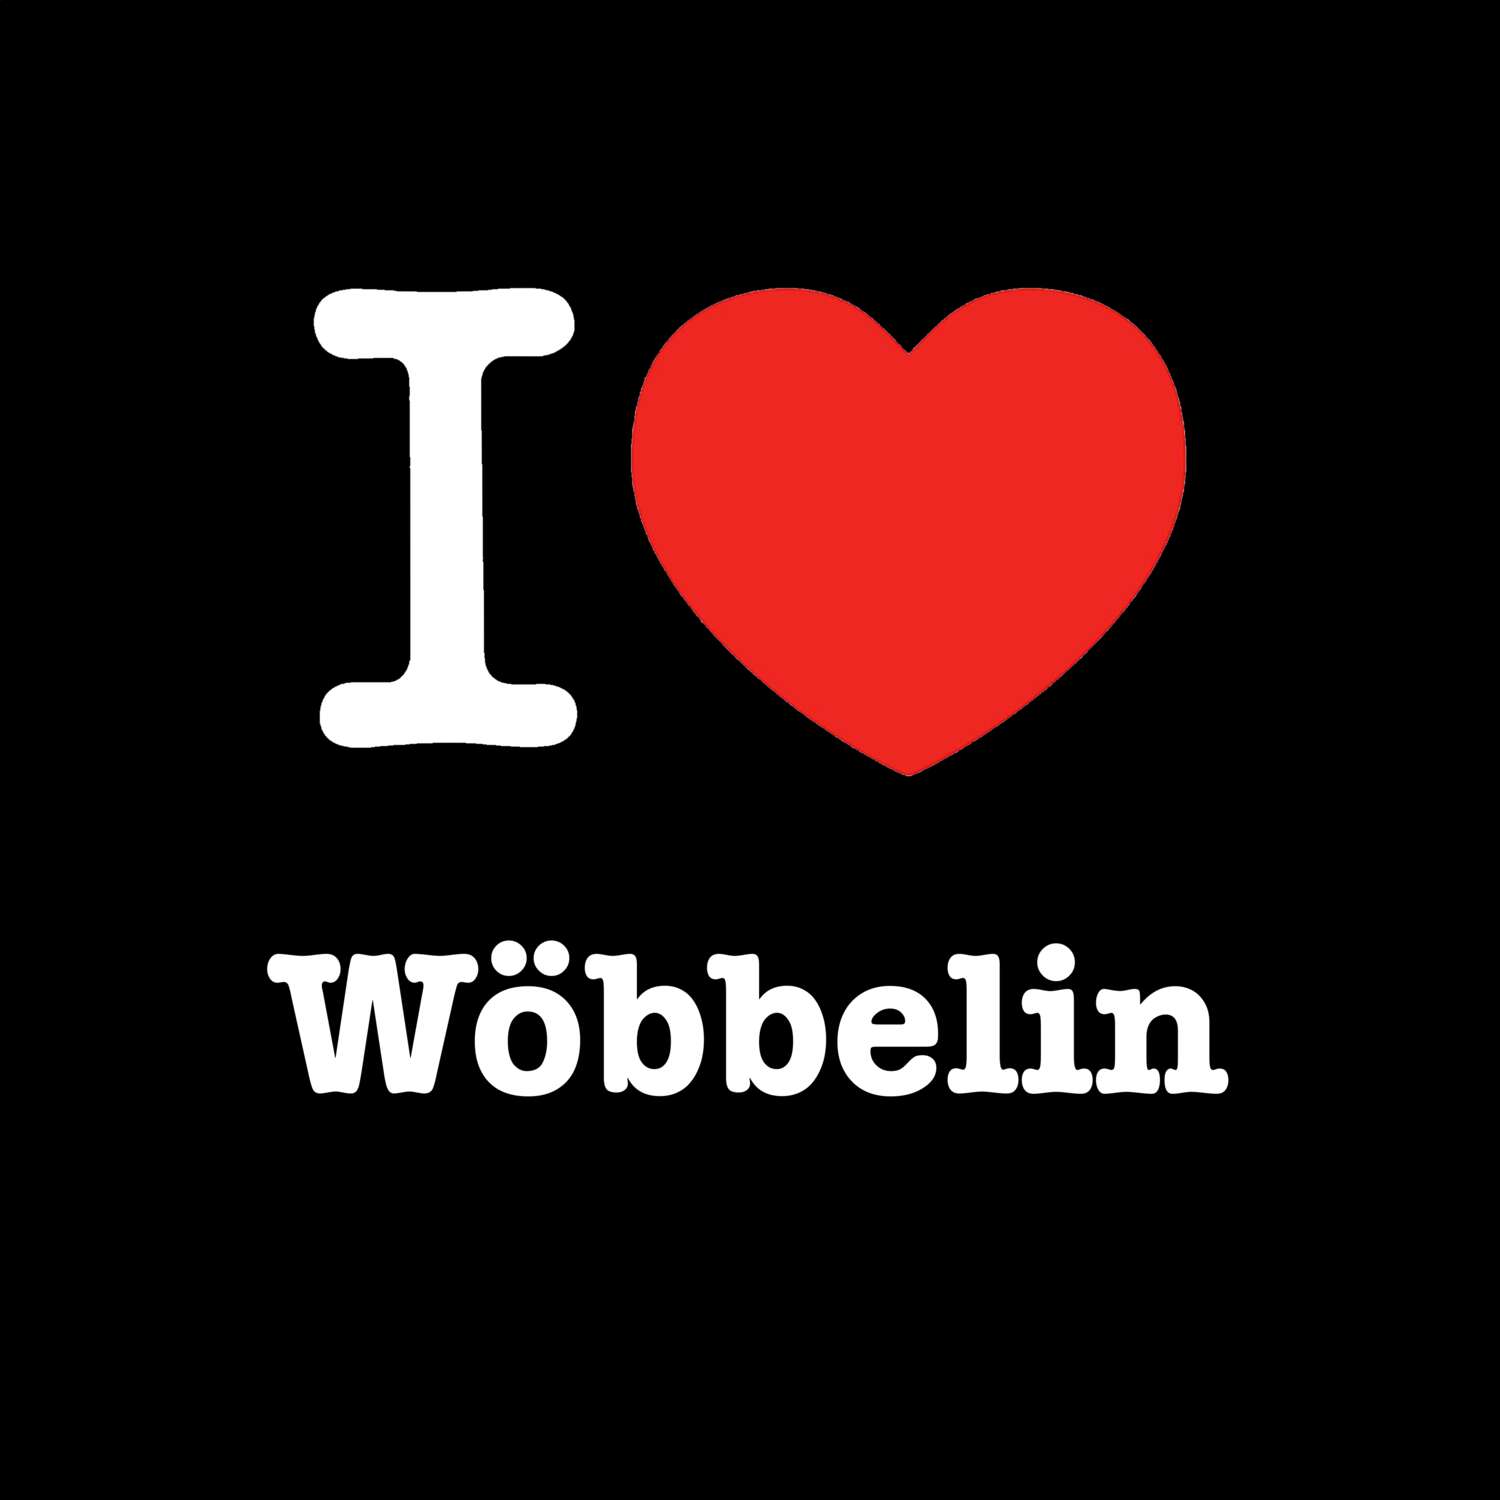 Wöbbelin T-Shirt »I love«